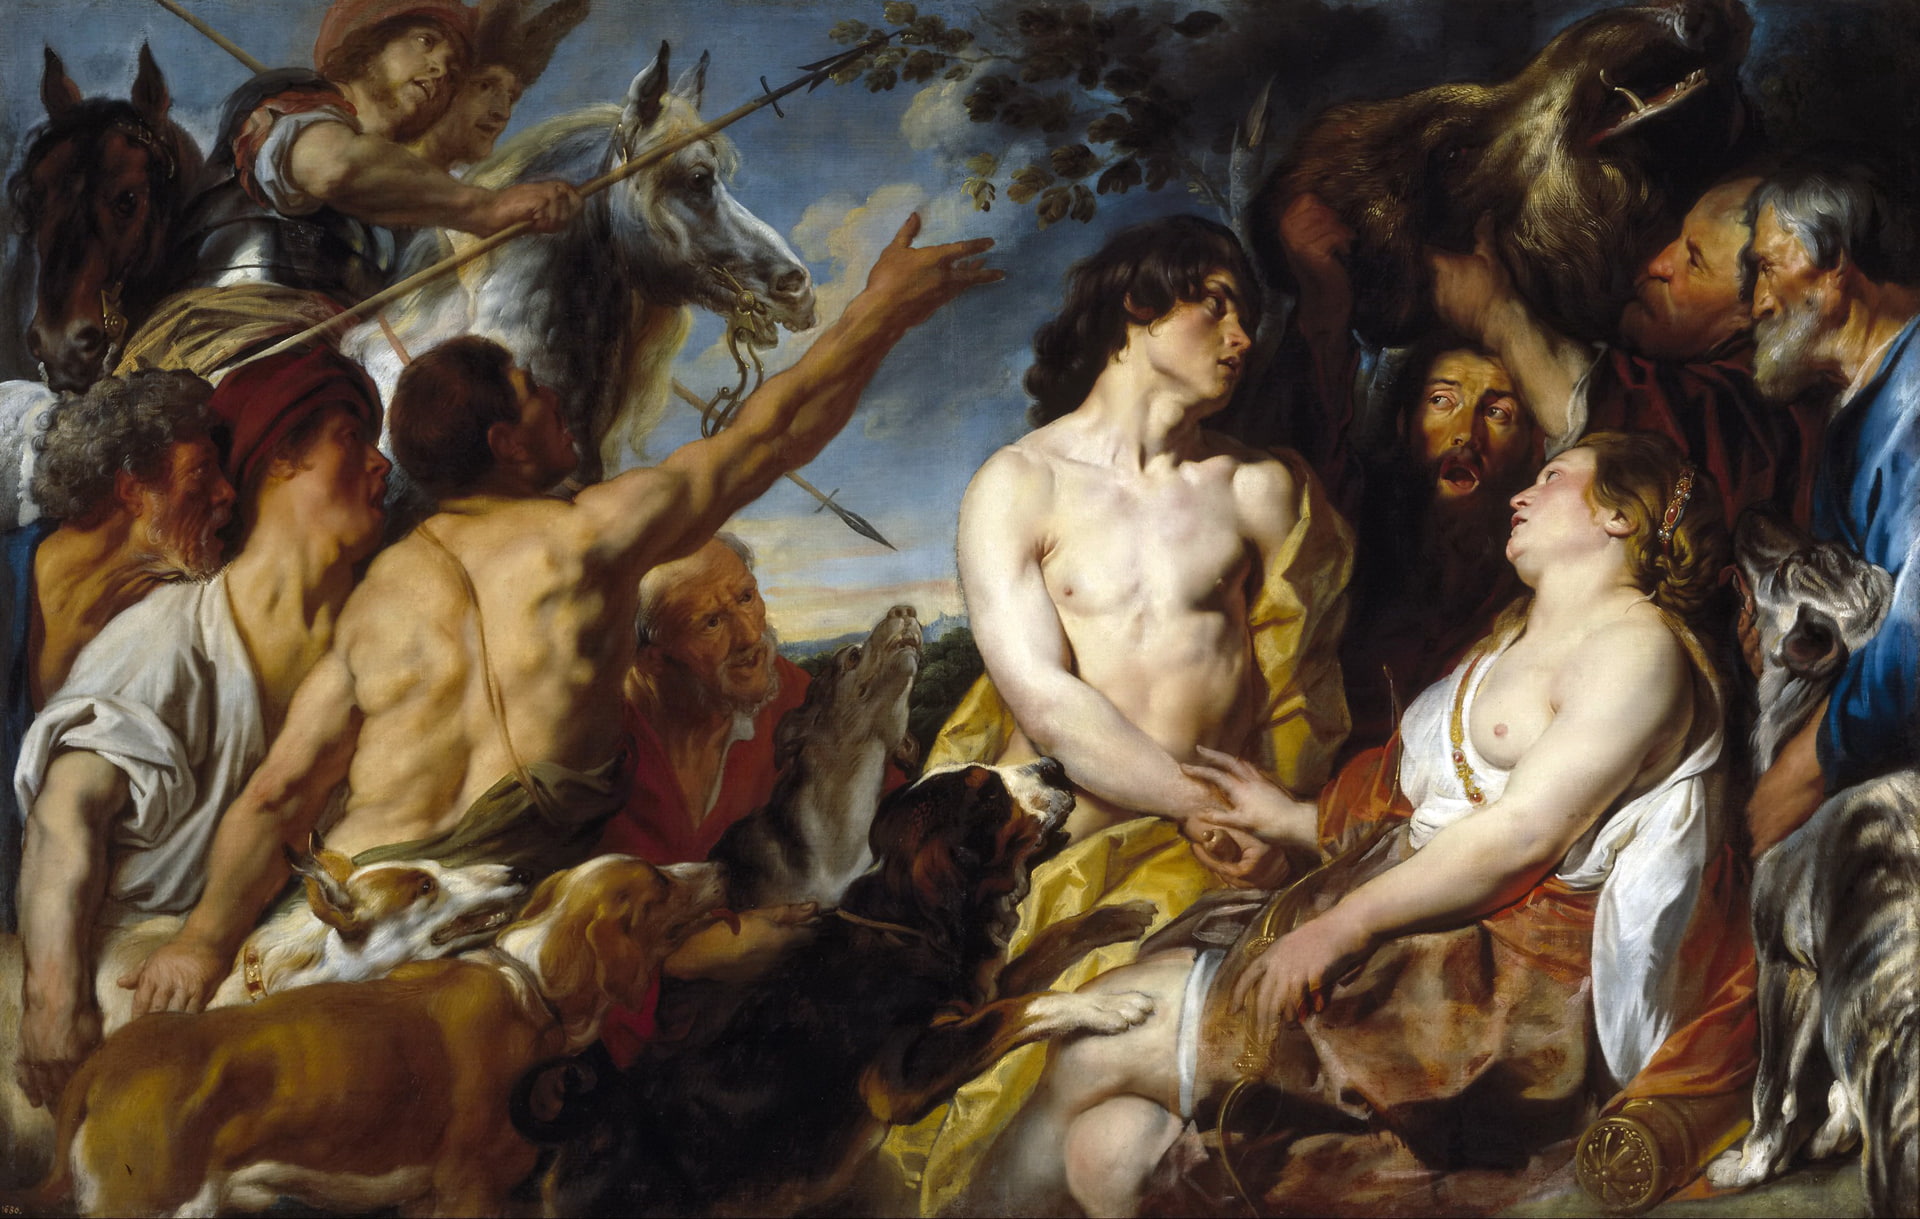 picture, mythology, Jacob Jordaens, Meleager and Atalanta